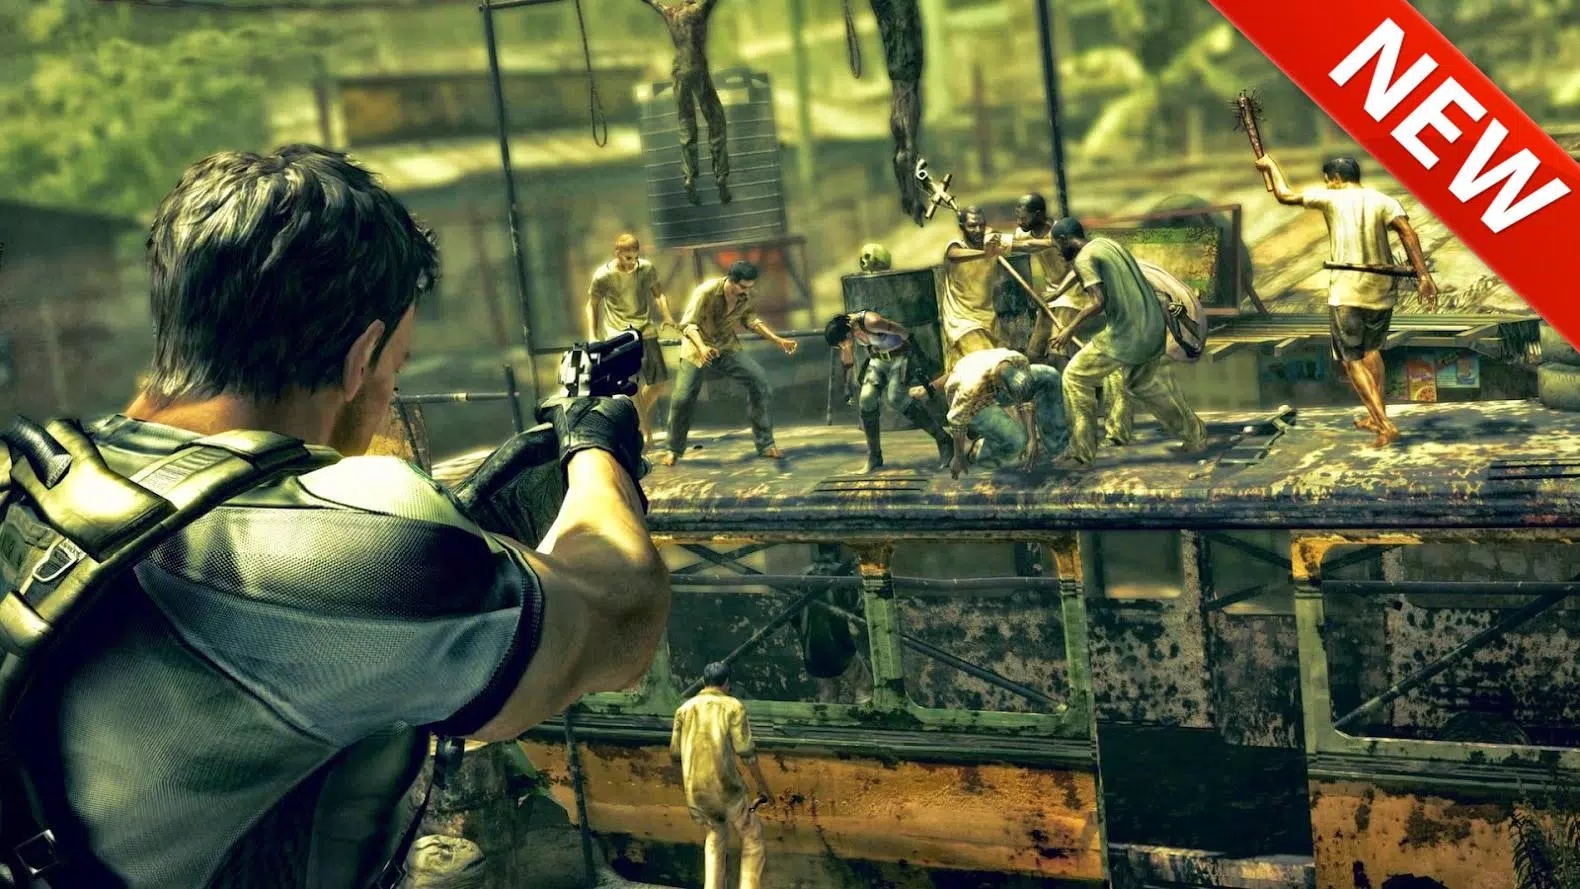 Baixar a última versão do Resident Evil 5 PC e Android grátis em